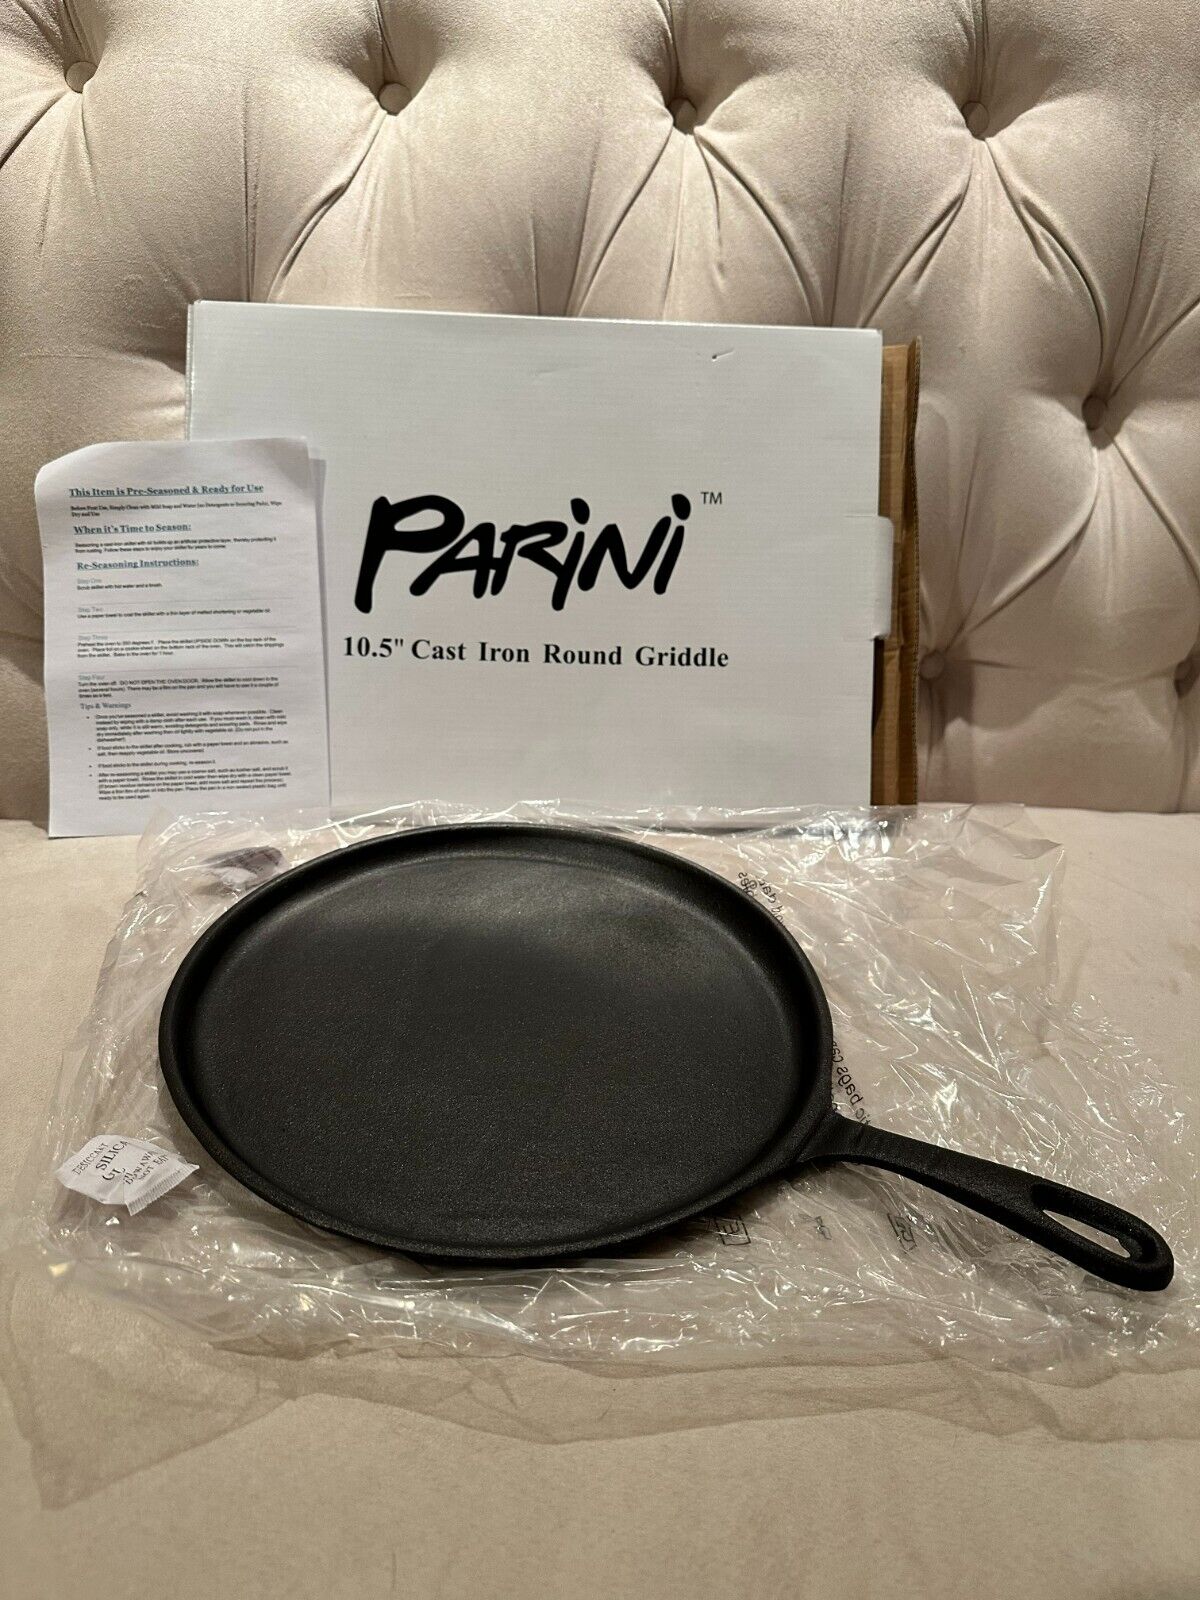 NEW Parini Premium 10.5